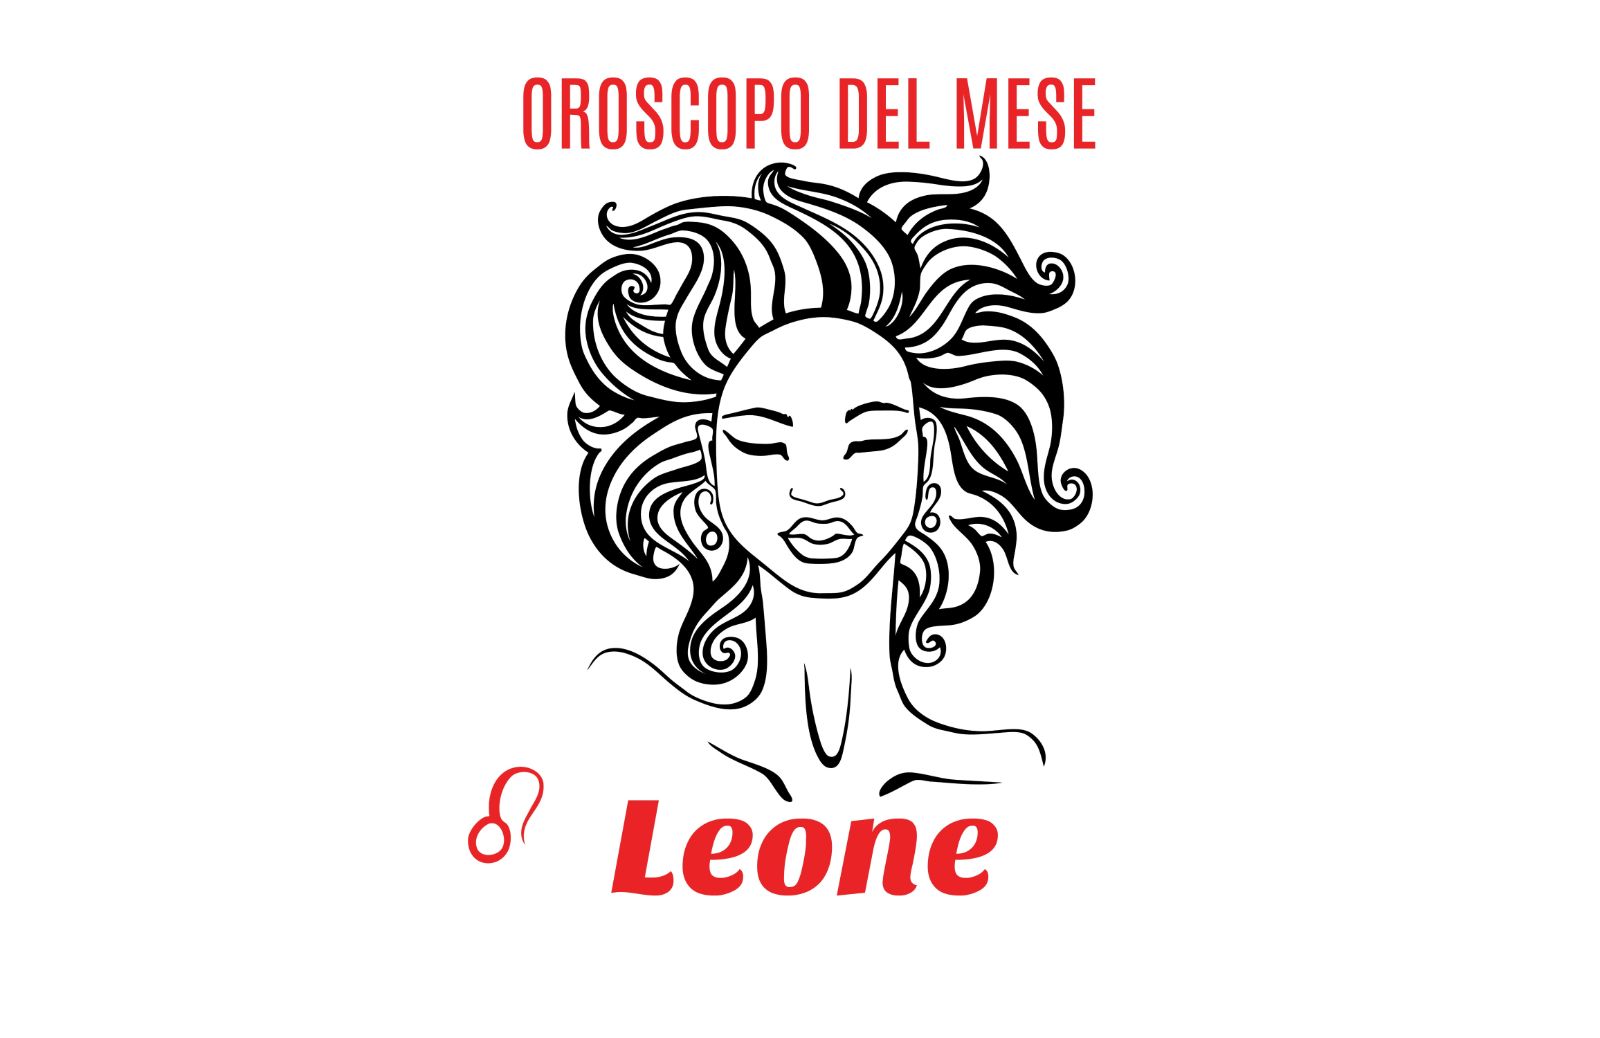 Oroscopo del mese: Leone - luglio 2020